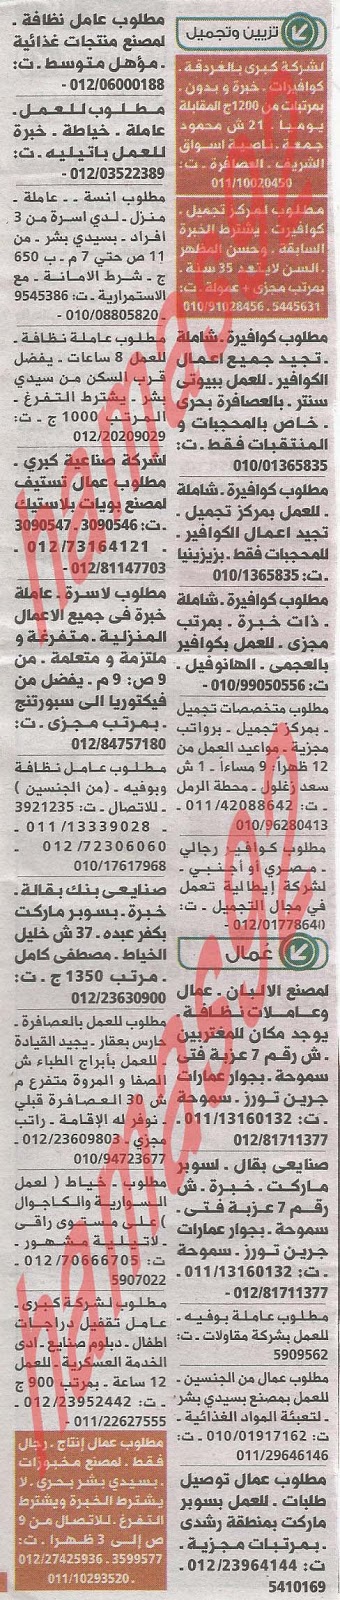 وظائف خالية فى جريدة الوسيط الاسكندرية الجمعة 10-05-2013 %D9%88+%D8%B3+%D8%B3+6